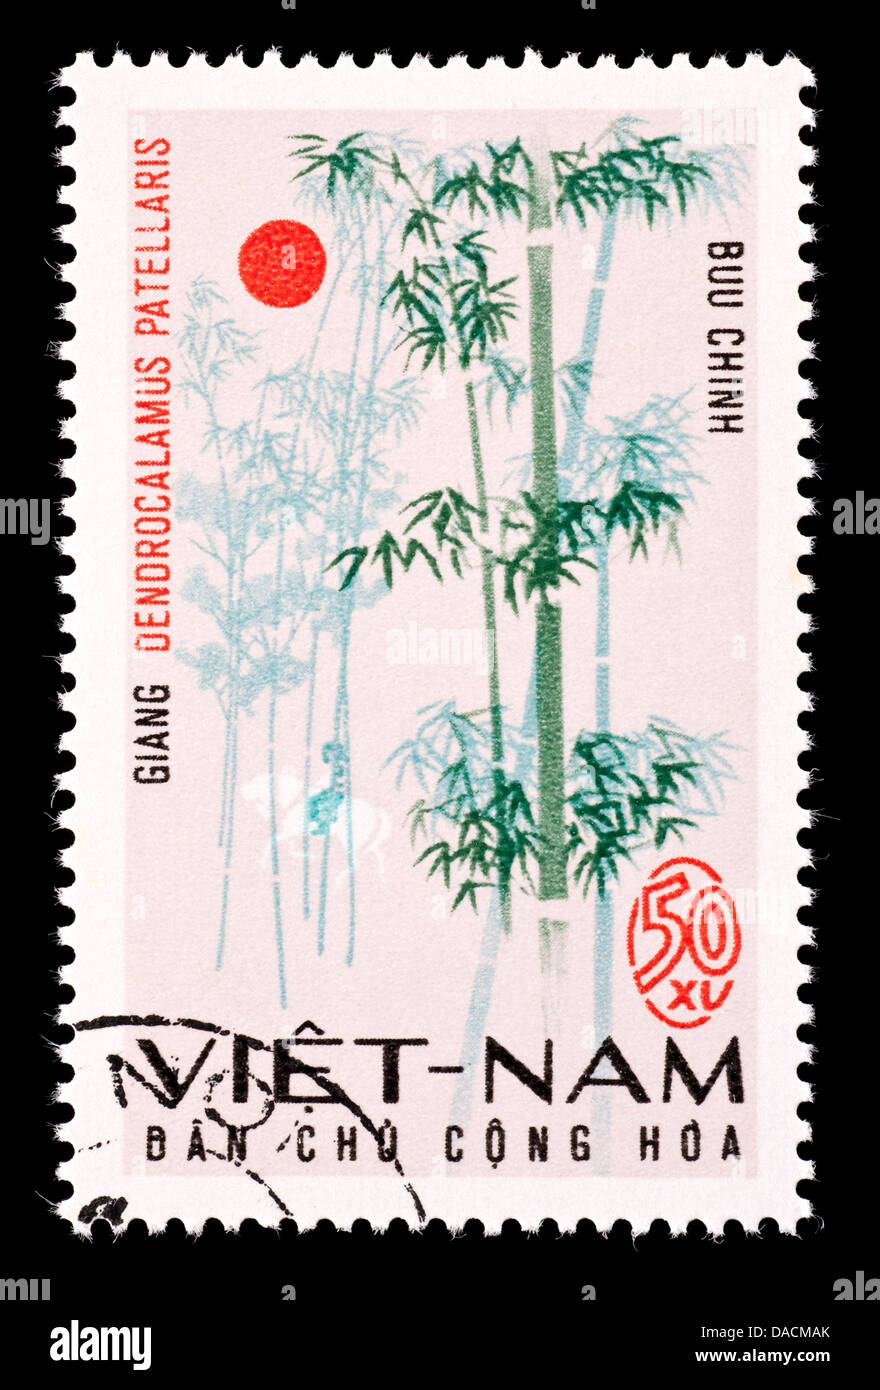 Postage stamp from Vietnam depicting bamboo (Dendrocalamus patellaris) Stock Photo